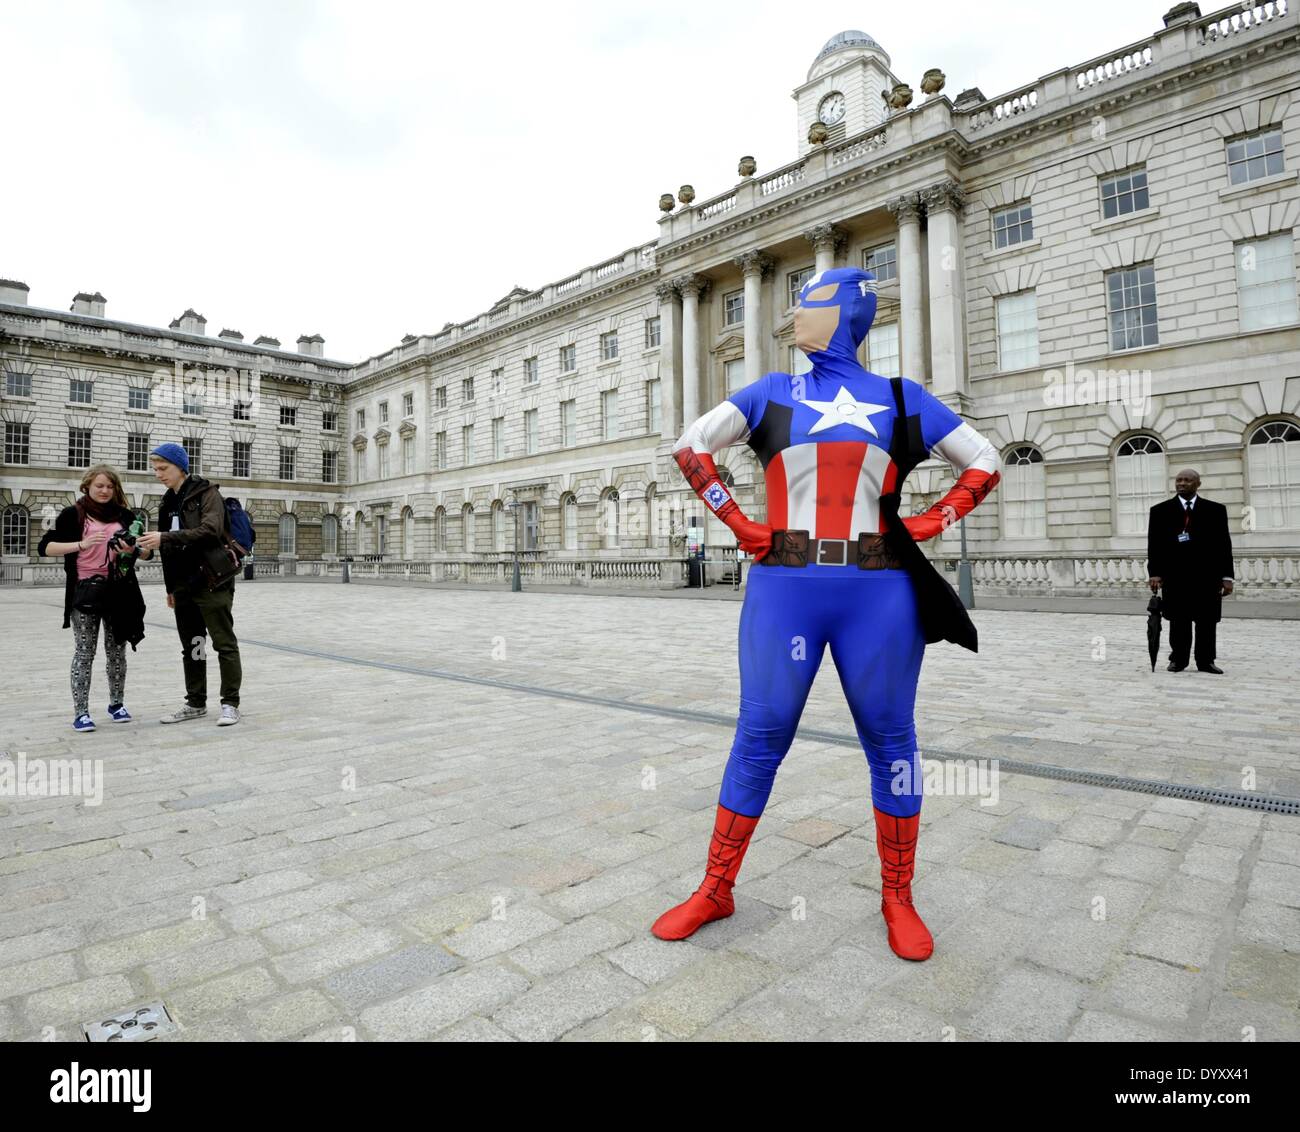 27/04/2014: Cosplayers, zombie, stormtroopers, steampunks, daywalkers, supereroi si riuniranno presso la Somerset House di Londra per una sfilata per le strade di Londra. Una femmina di Captain America. Foto di Julie Edwards Foto Stock